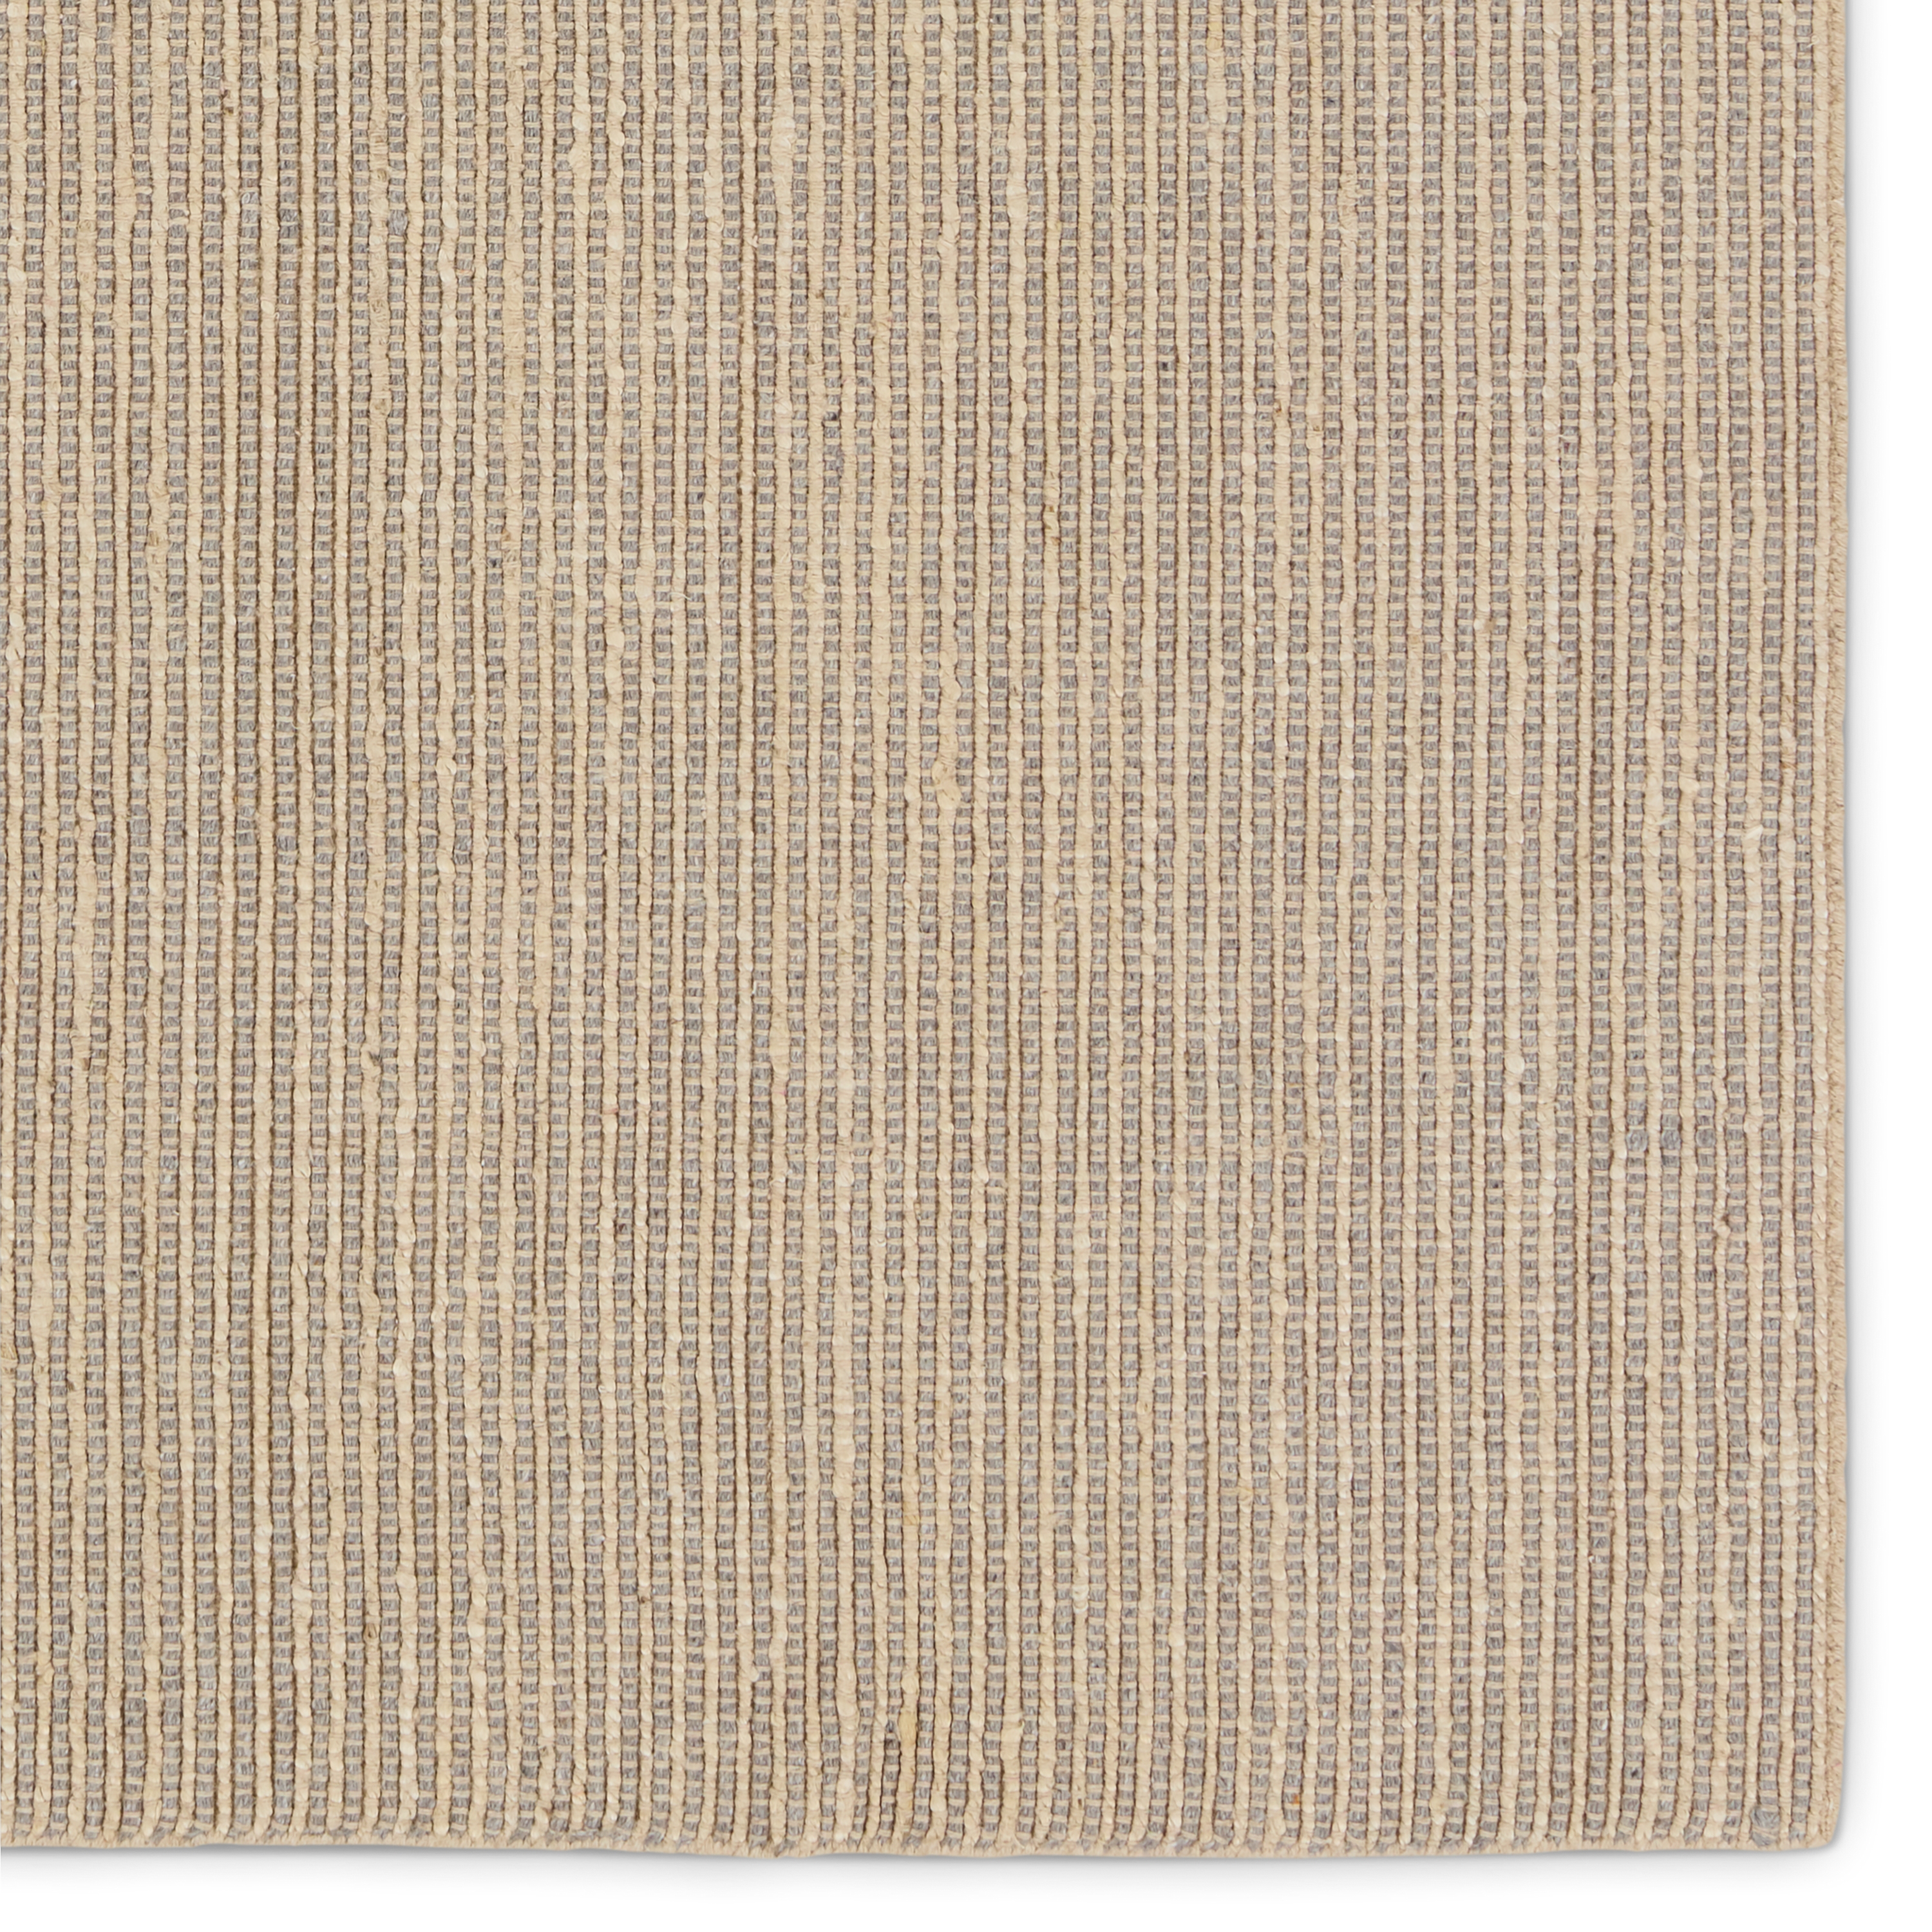 Latona Handmade Striped Gray/ Tan Runner Rug (3'X8') - Image 3